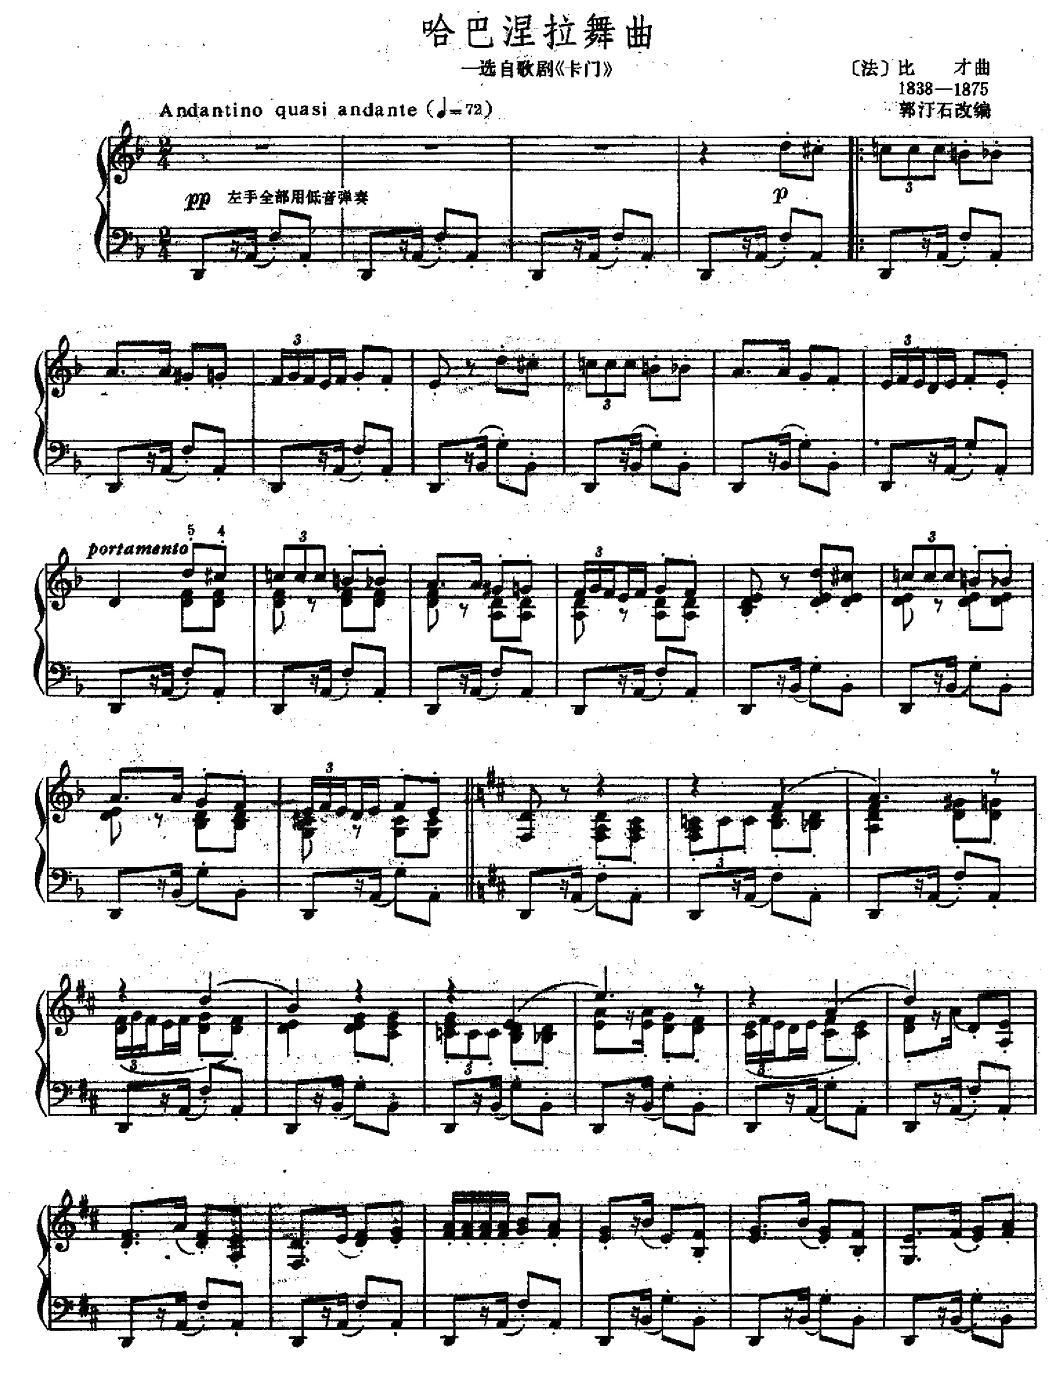 卡门-哈巴涅拉舞曲-好听较完美版-爱情是一只自由的鸟儿五线谱预览3-钢琴谱文件（五线谱、双手简谱、数字谱、Midi、PDF）免费下载